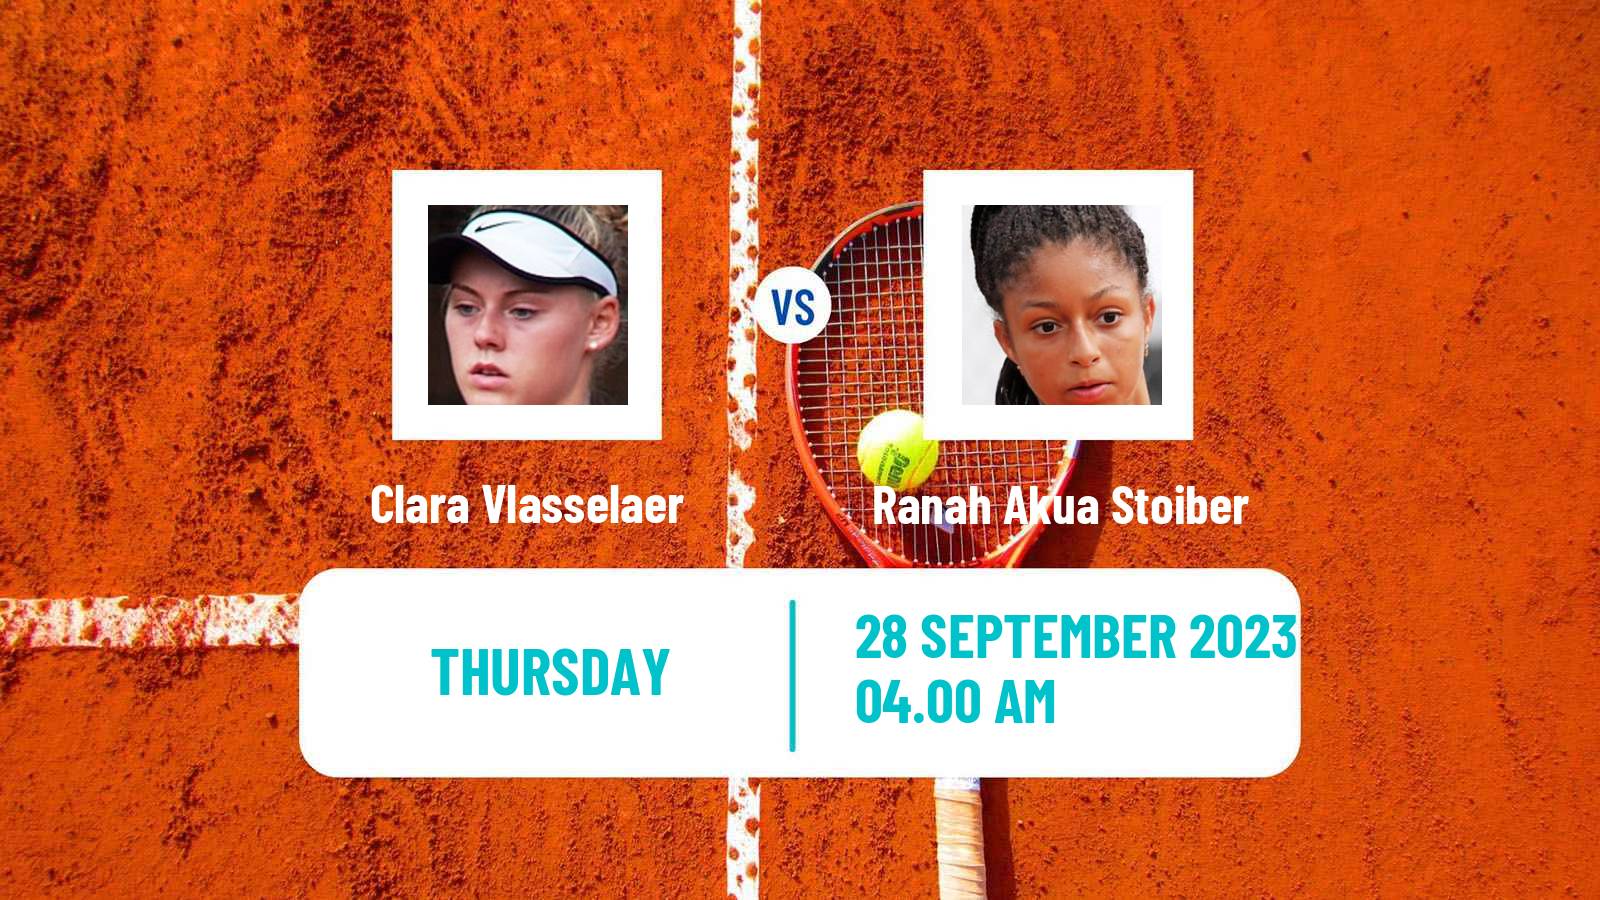 Tennis ITF W15 Monastir 34 Women Clara Vlasselaer - Ranah Akua Stoiber